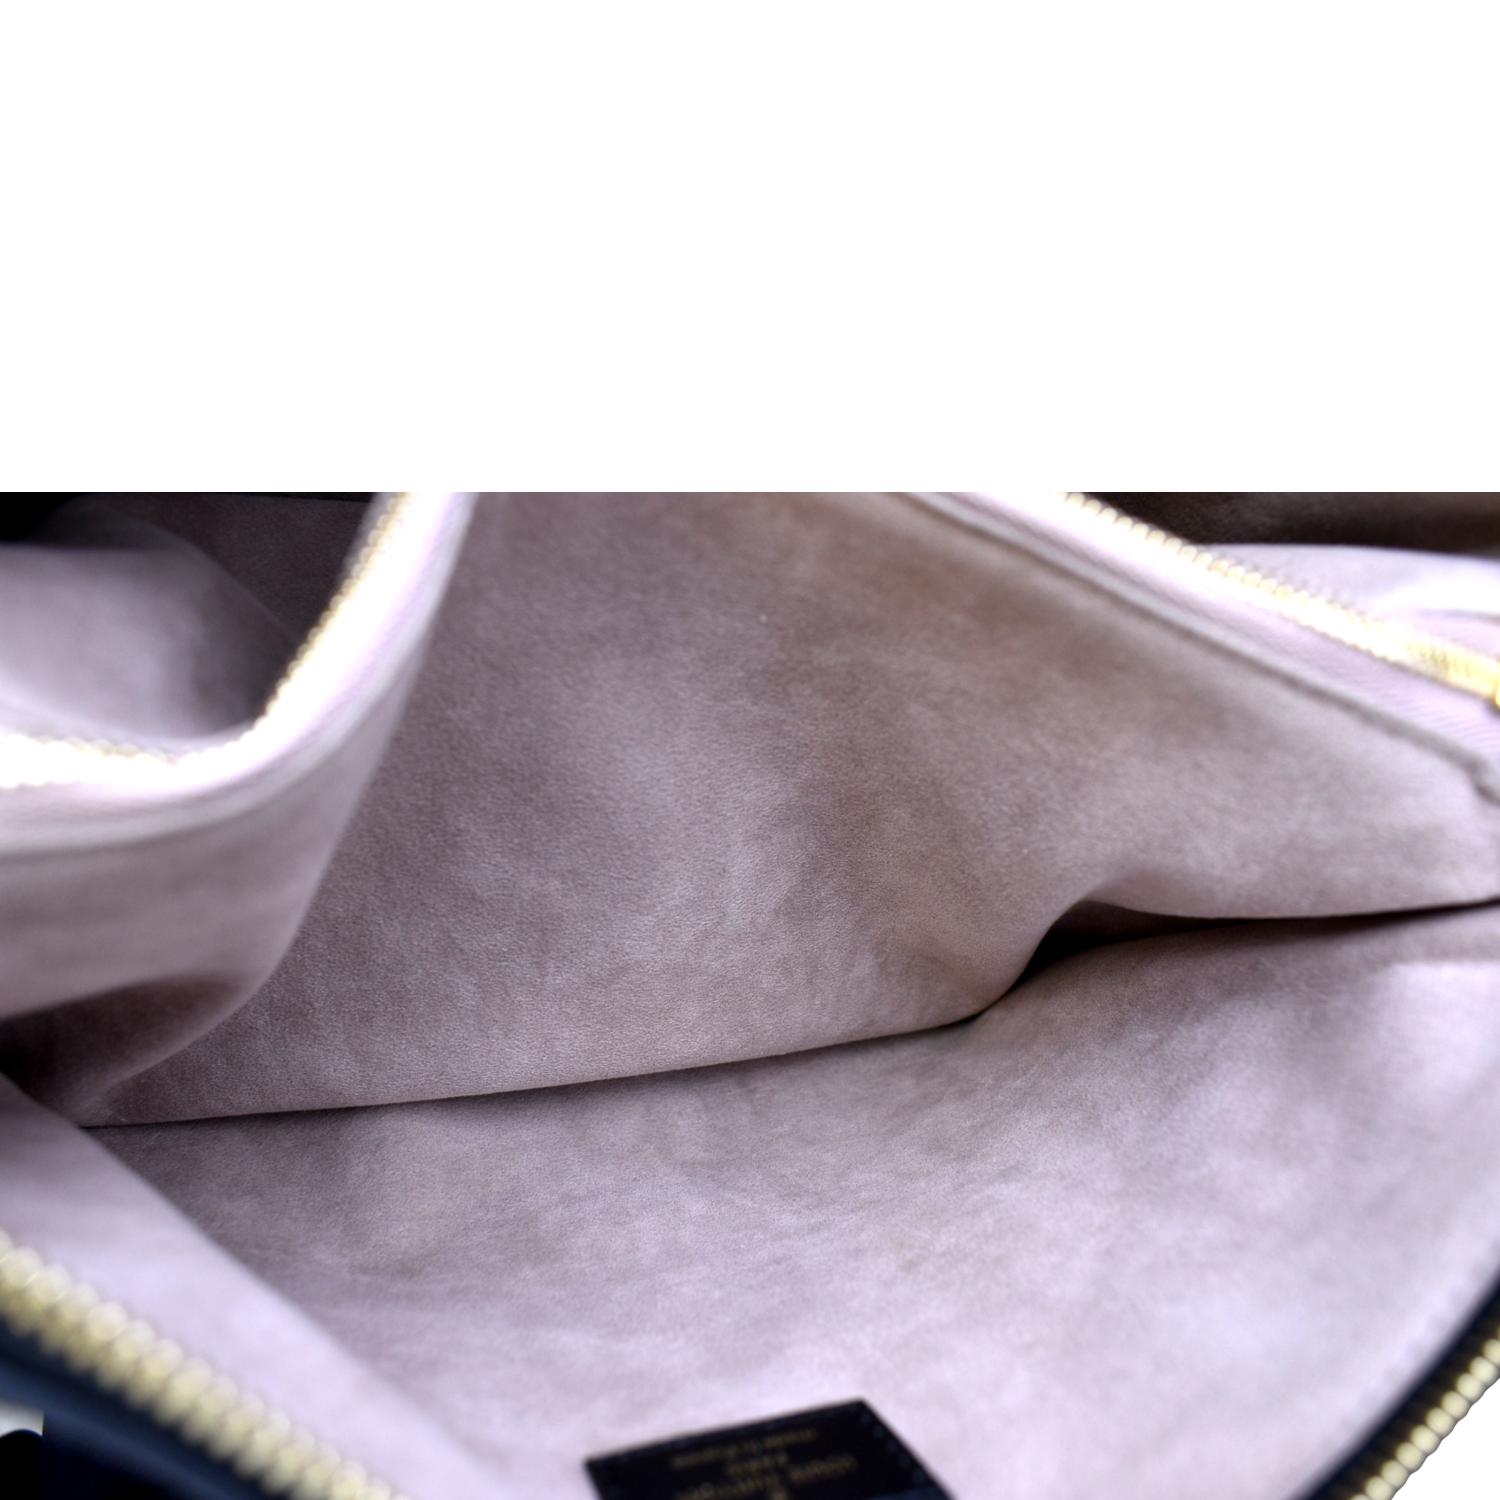 Louis Vuitton Coussin PM M57790 2WAY Shoulder Bag Monogram Noir